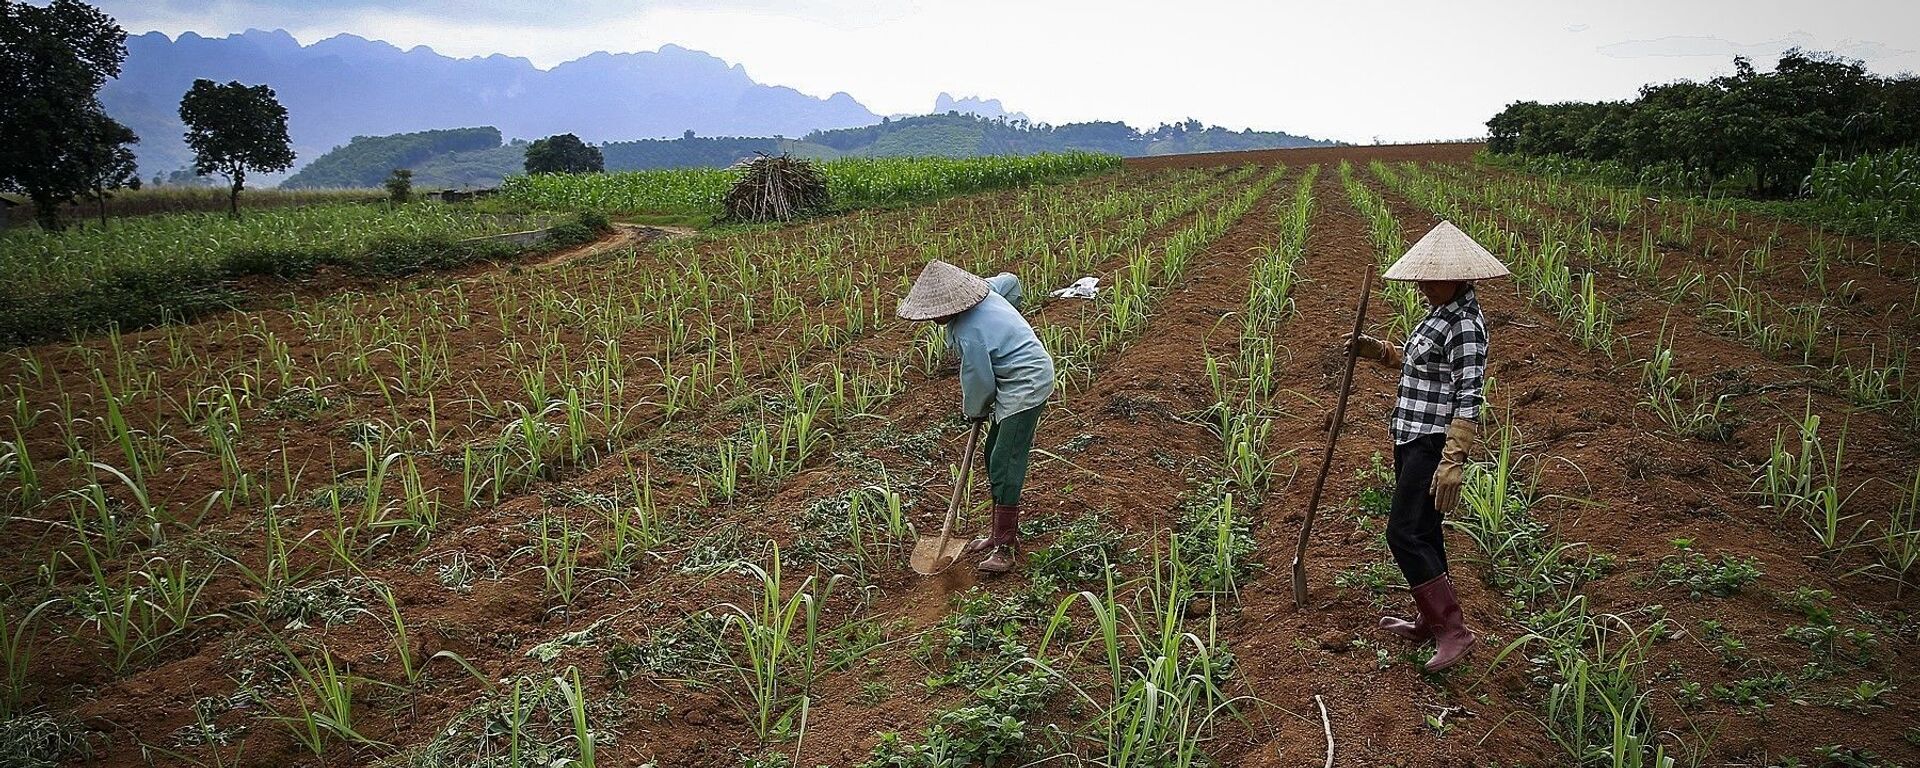 Những cánh đồng đang được những người nông dân trồng mía ở xã Mỹ Hòa - Tân Lạc. - Sputnik Việt Nam, 1920, 16.06.2021